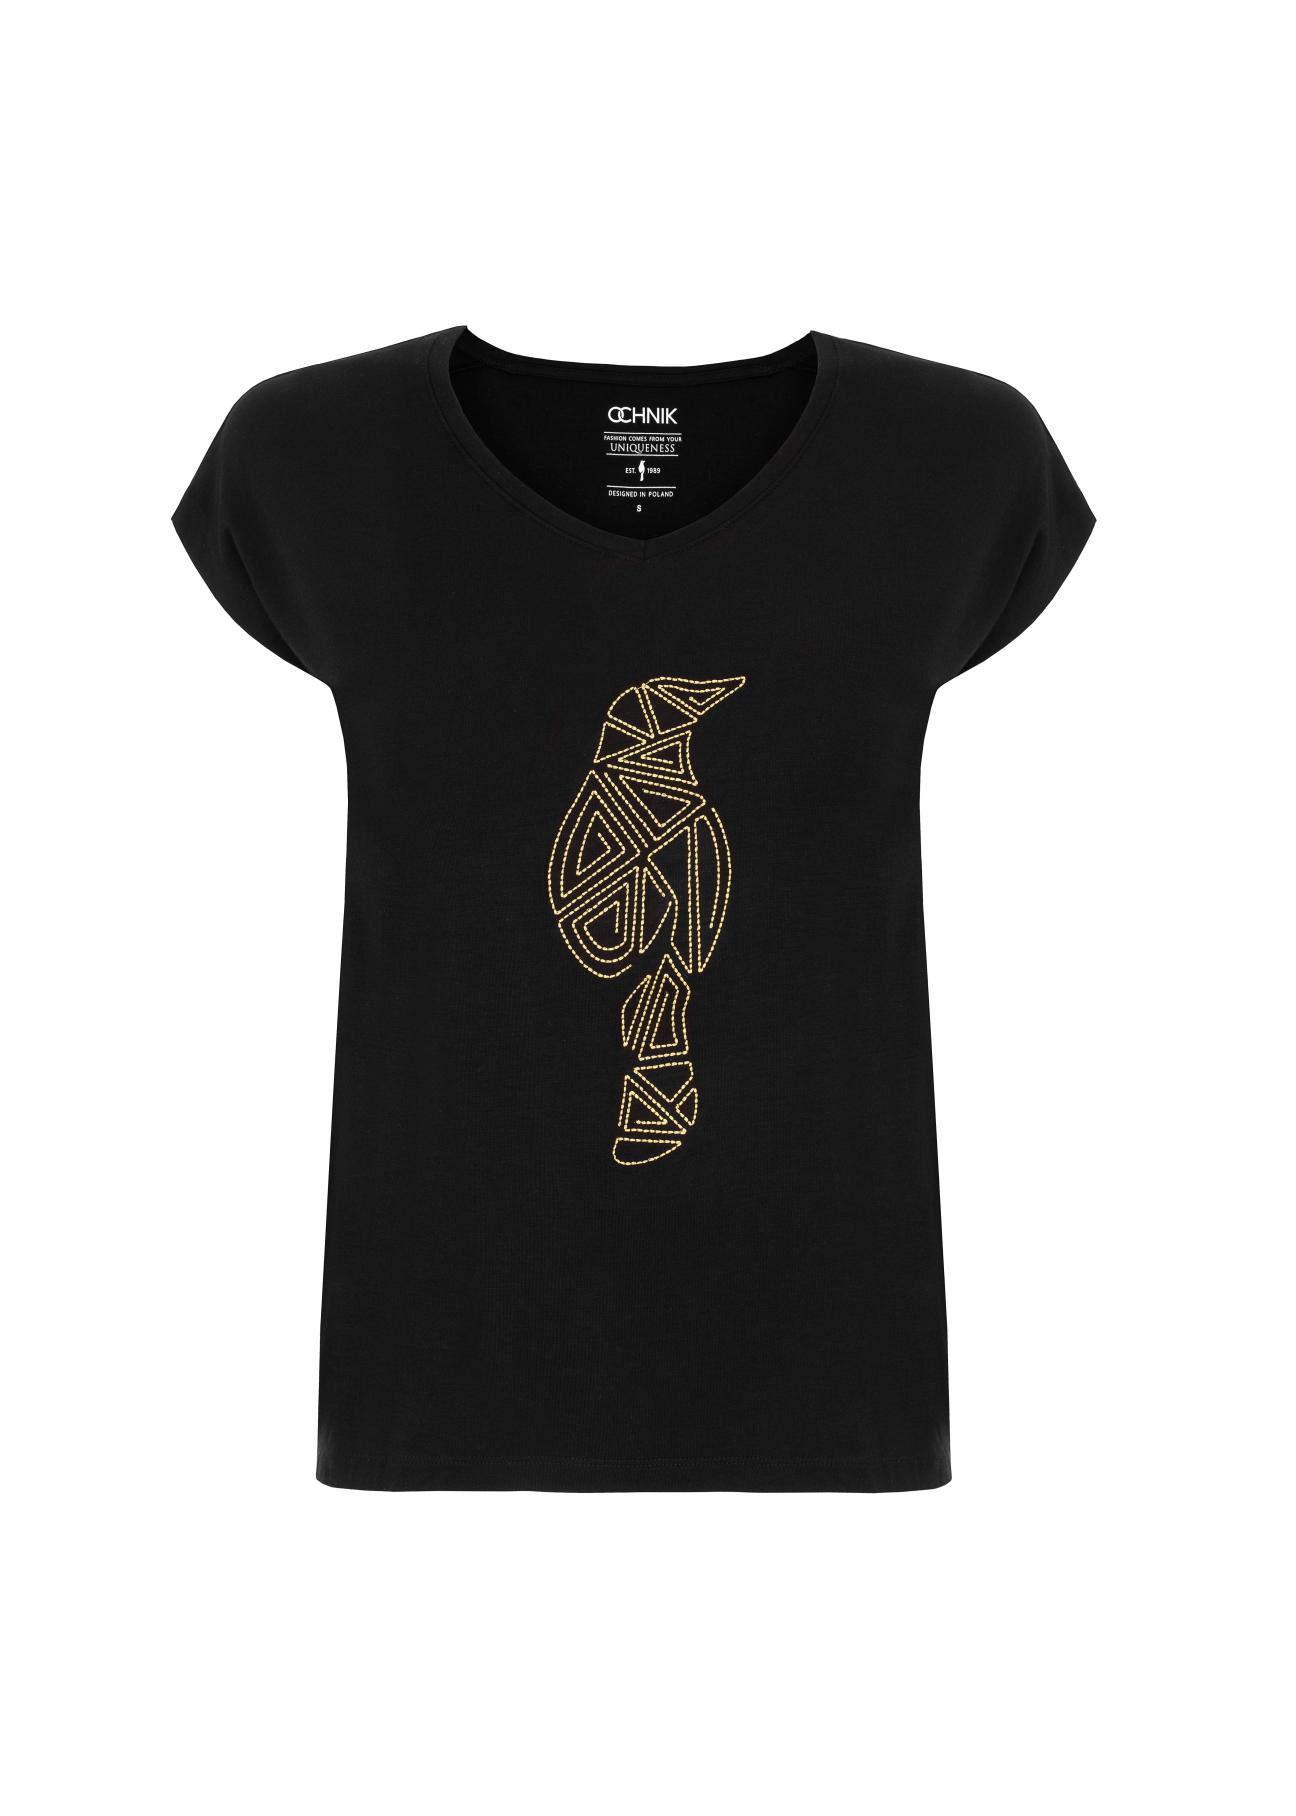 Czarny T-shirt damski z aplikacją TSHDT-0066-99(W22)